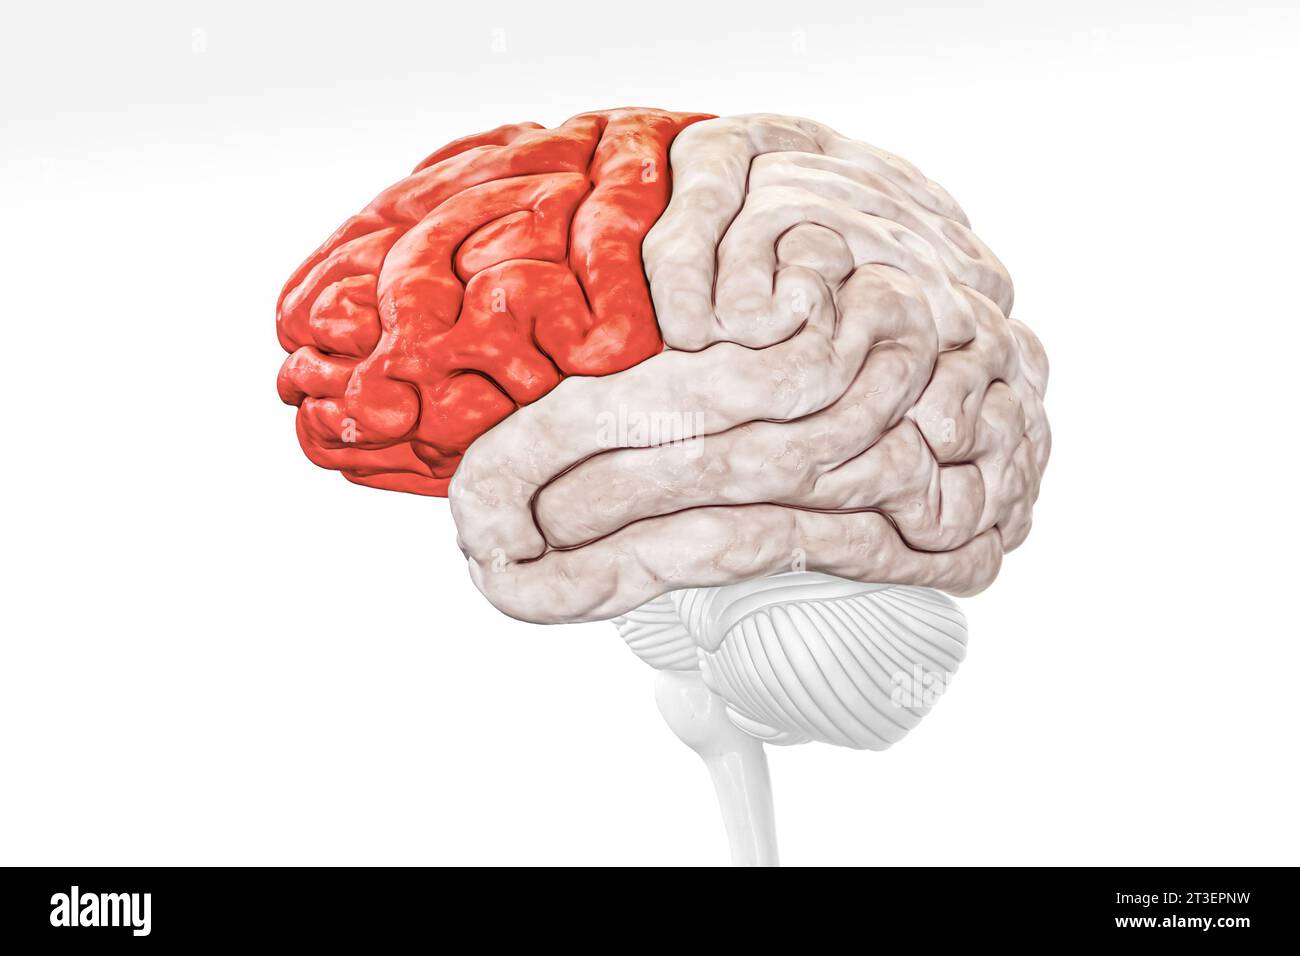 Lobo frontale della corteccia cerebrale nella vista del profilo di colore rosso isolata su sfondo bianco illustrazione di rendering 3D. Anatomia cerebrale umana, neurologia, neurosc Foto Stock